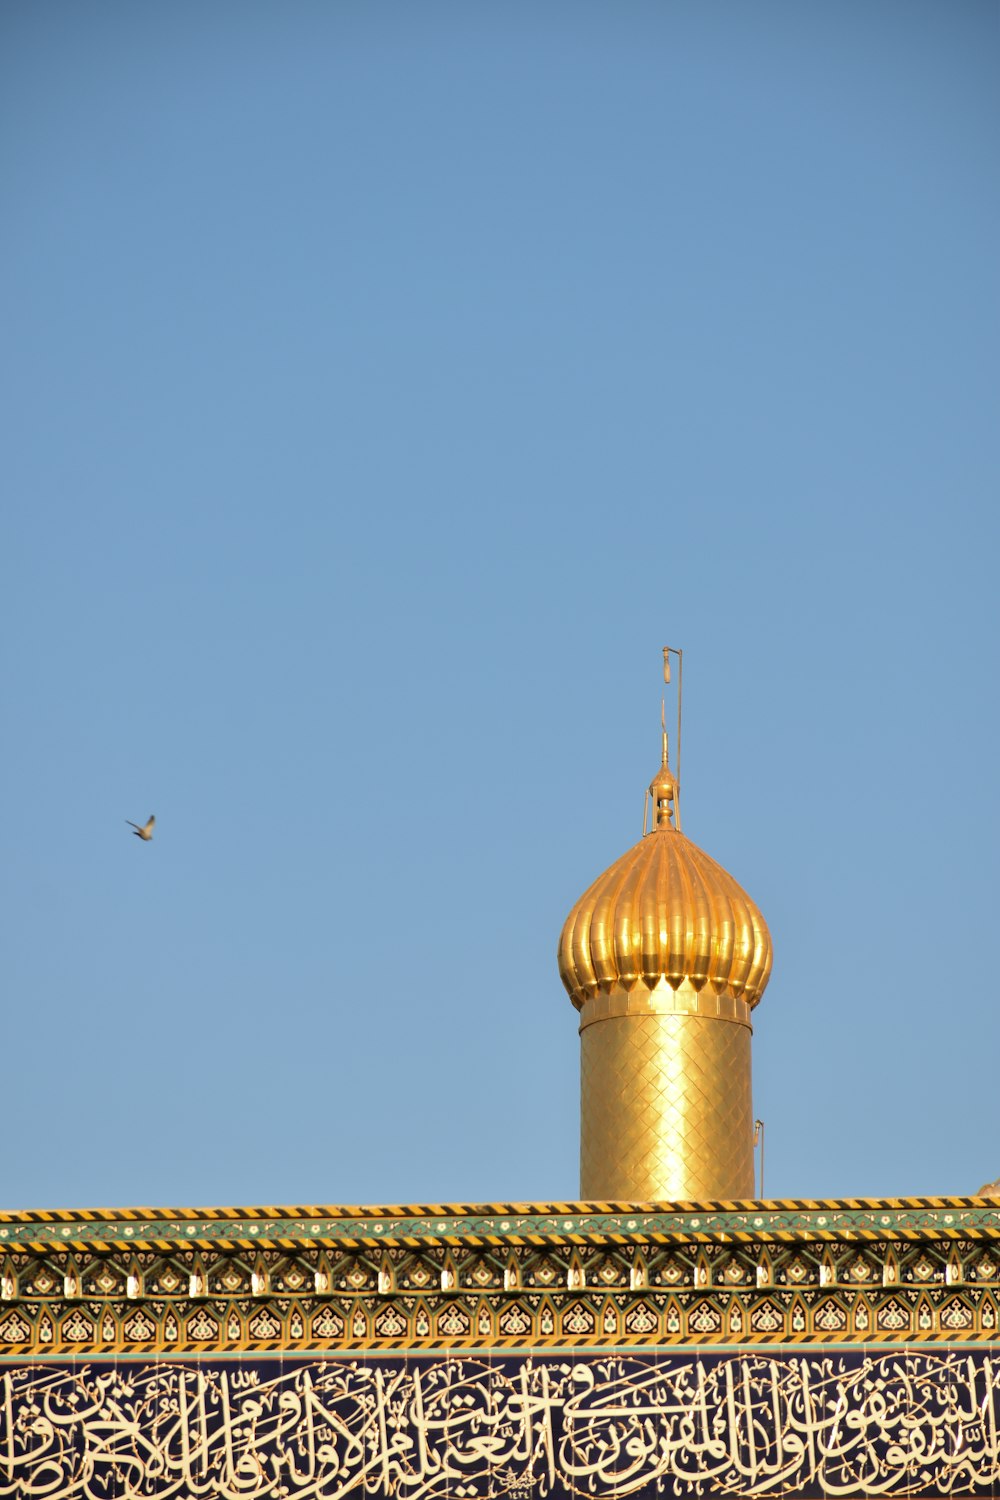 ドーム型の建物の上を飛ぶ鳥